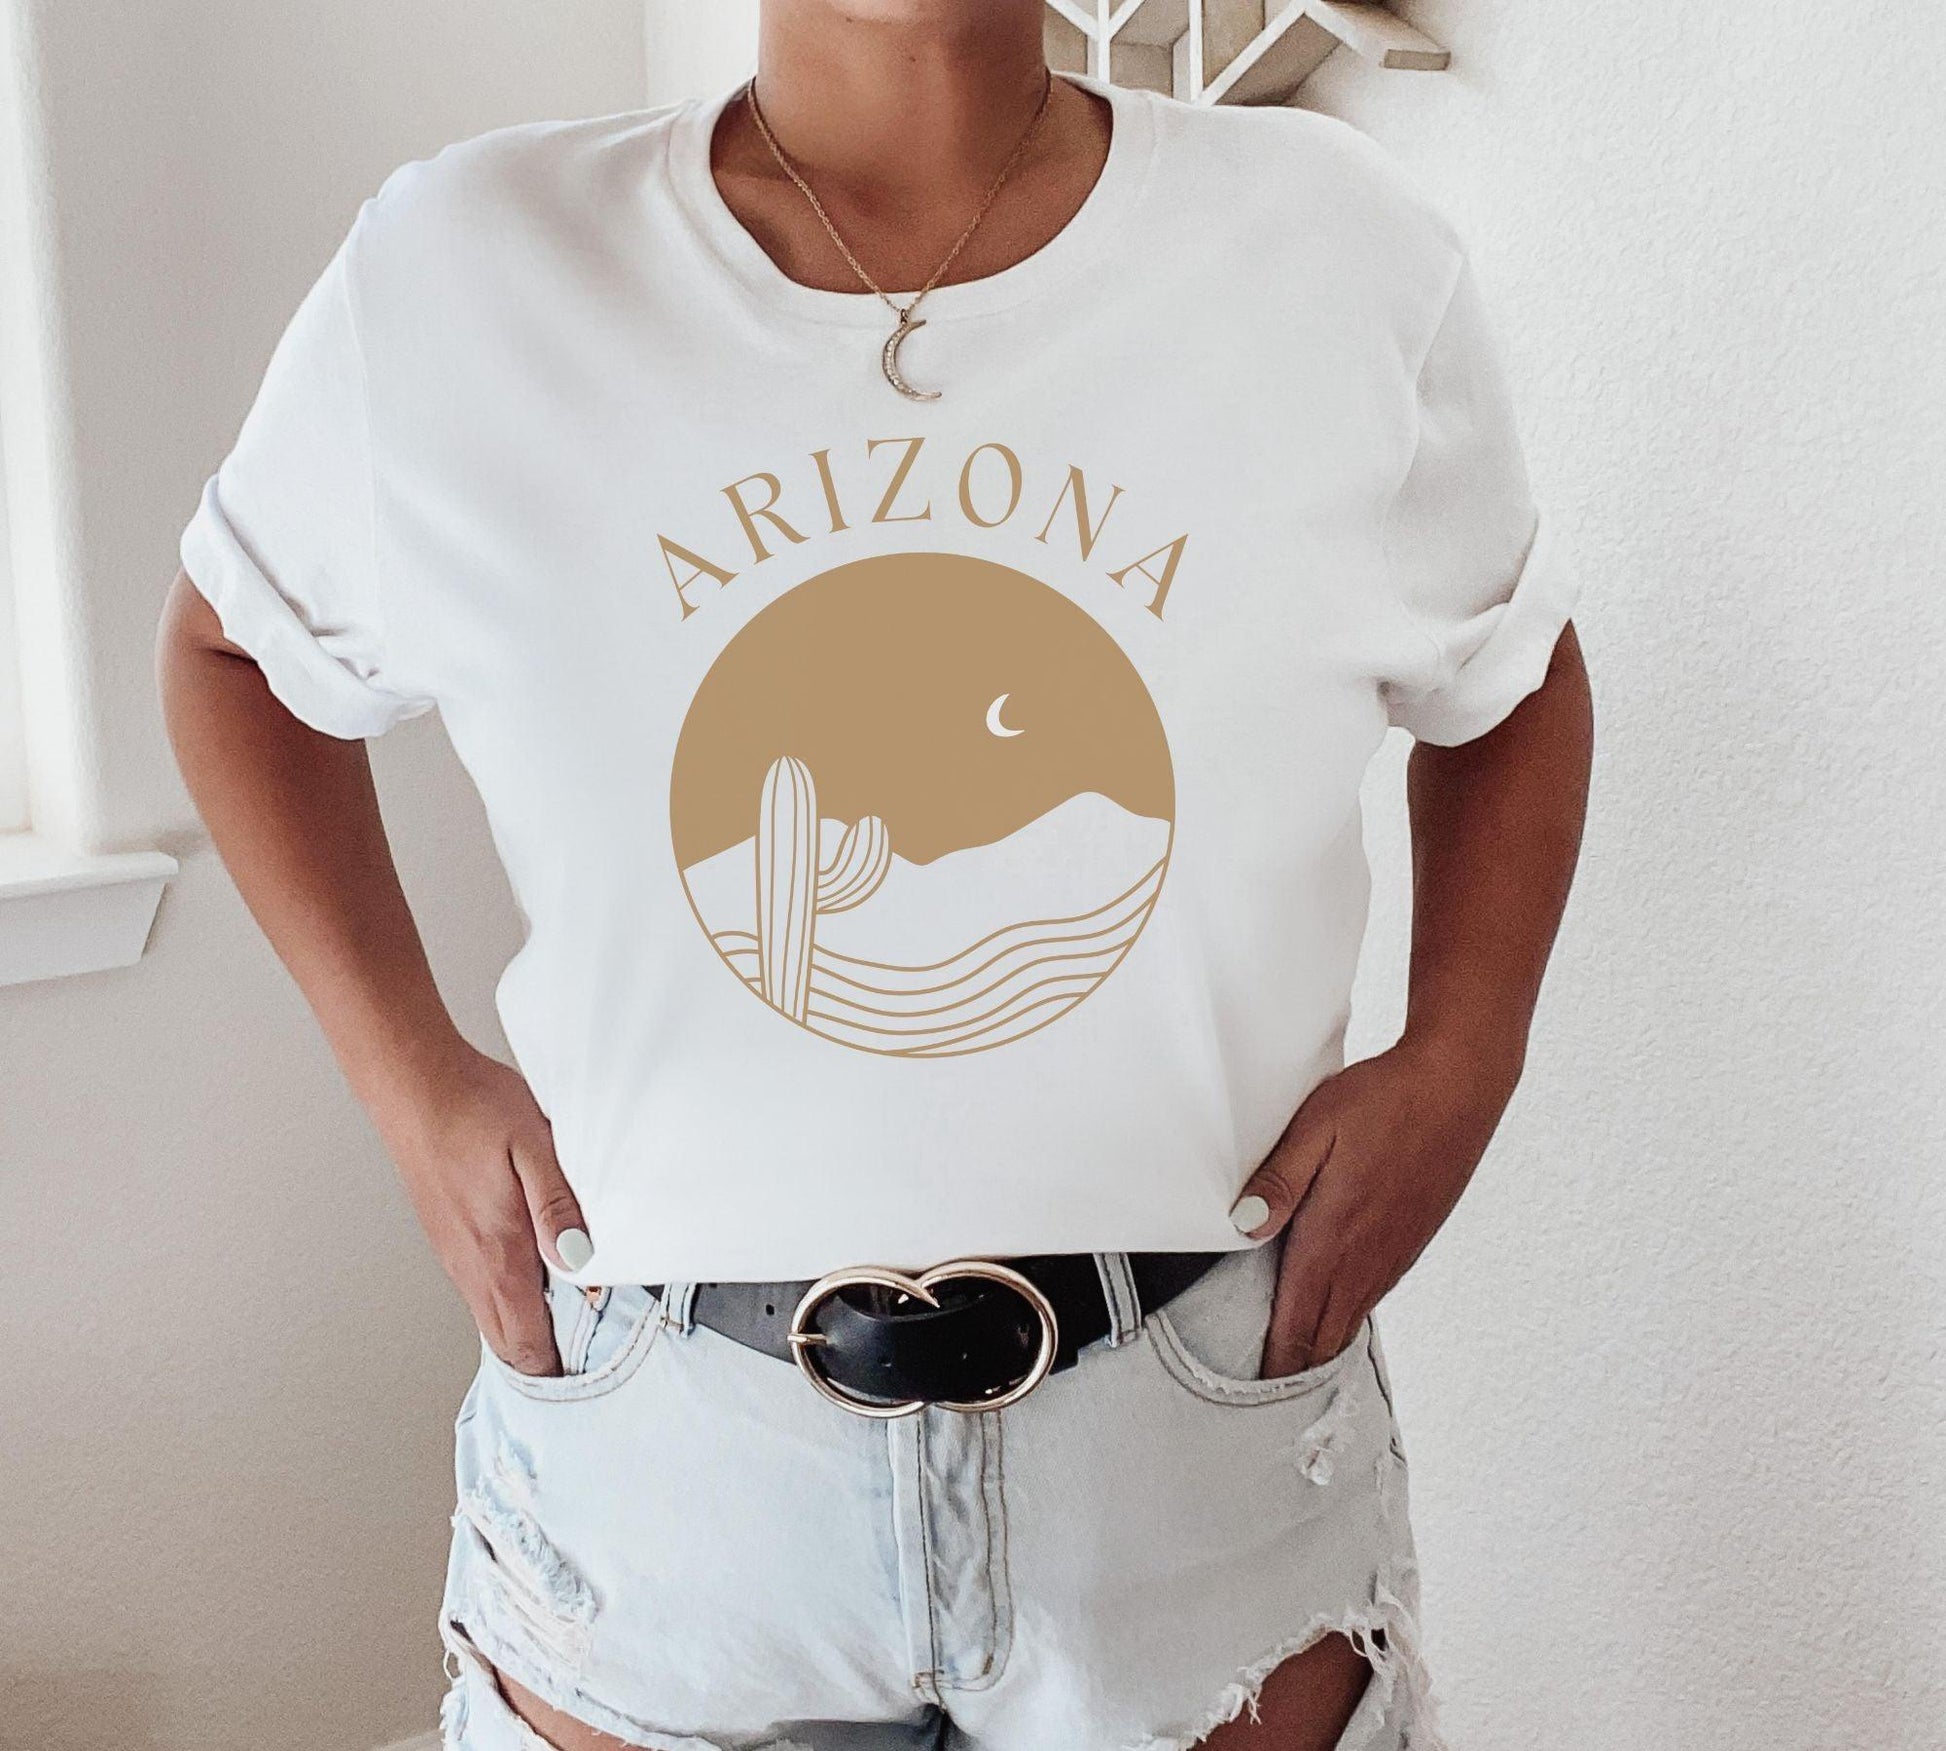 Arizona Desert Shirt - BentleyBlueCo